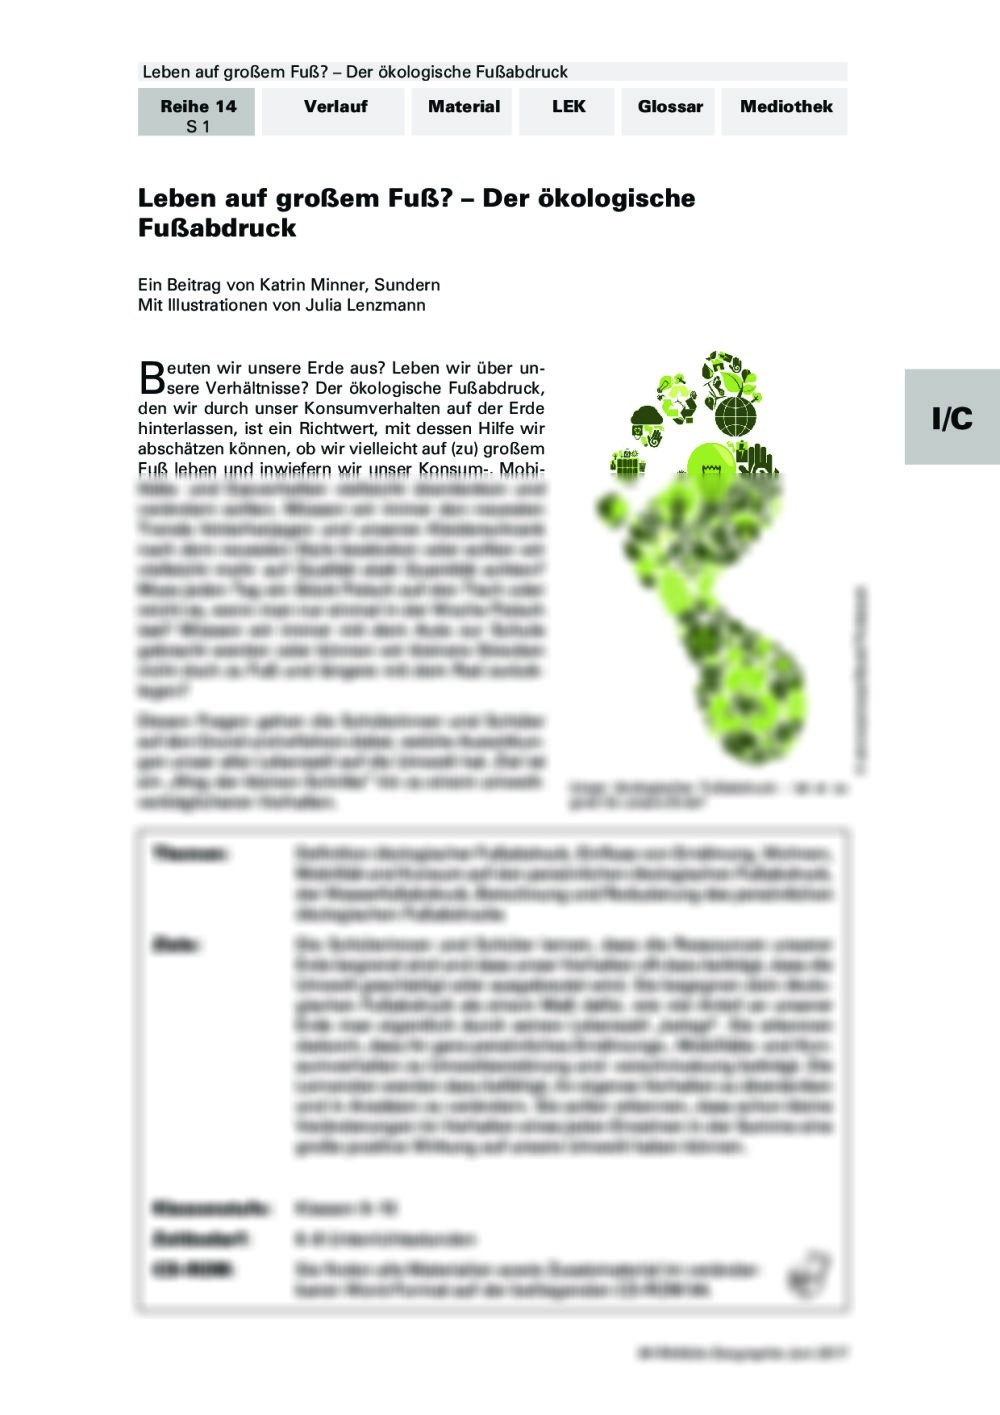 Der ökologische Fußabdruck - Seite 1